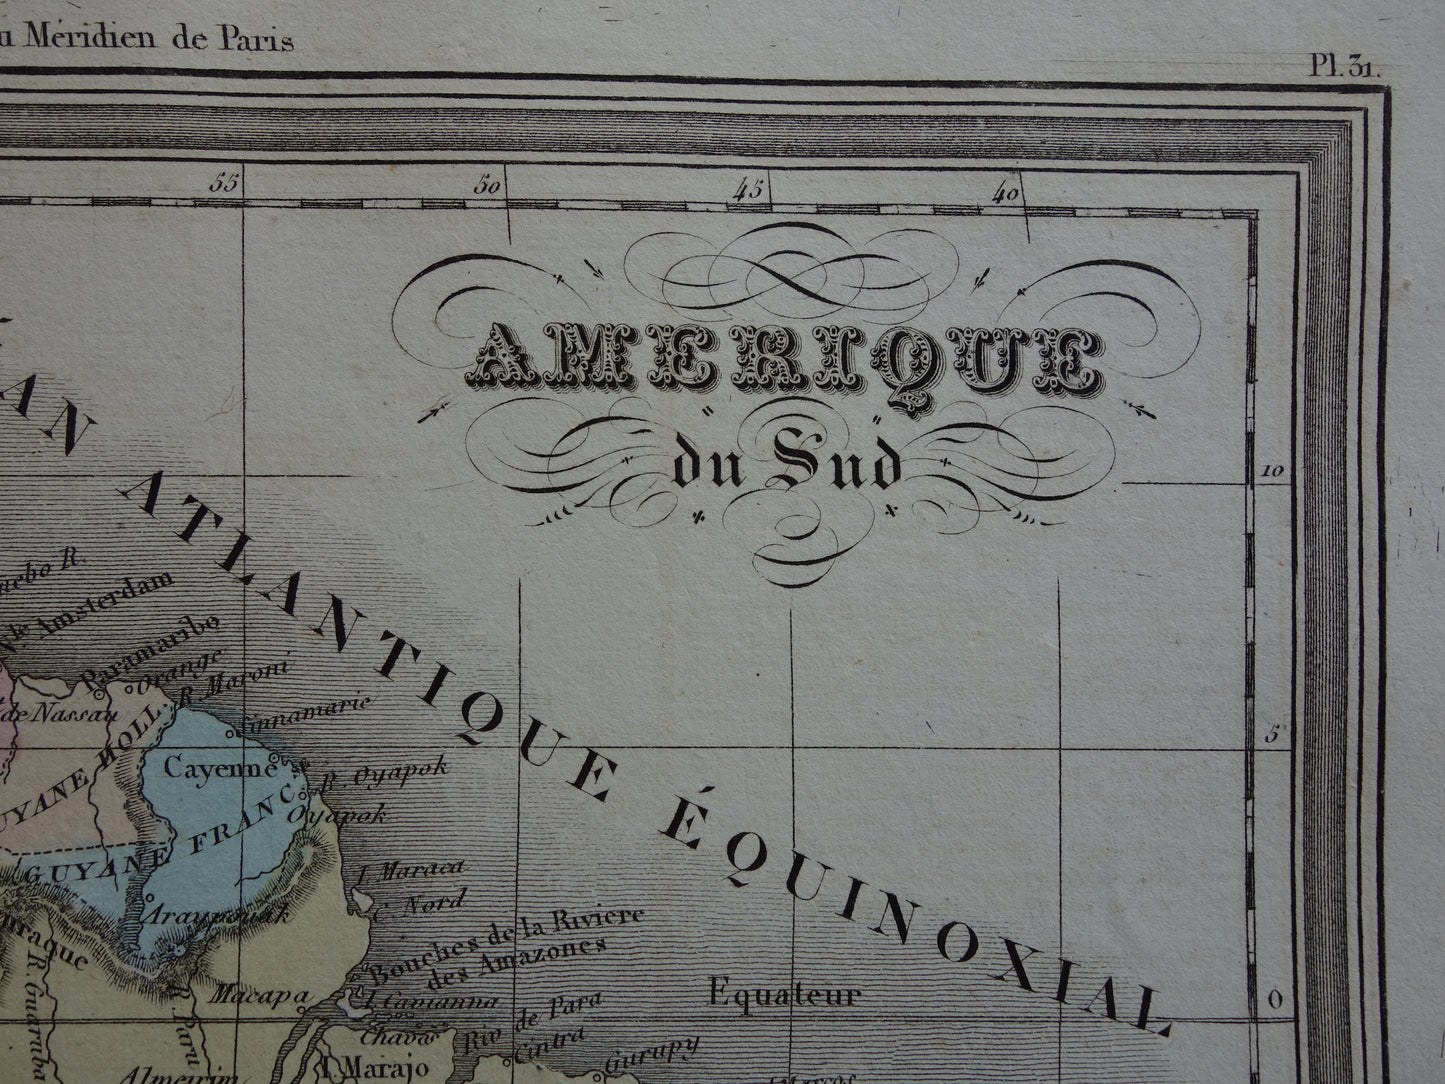 180+ jaar oude landkaart van Zuid-Amerika Originele Franse handgekleurde kaart uit 1838